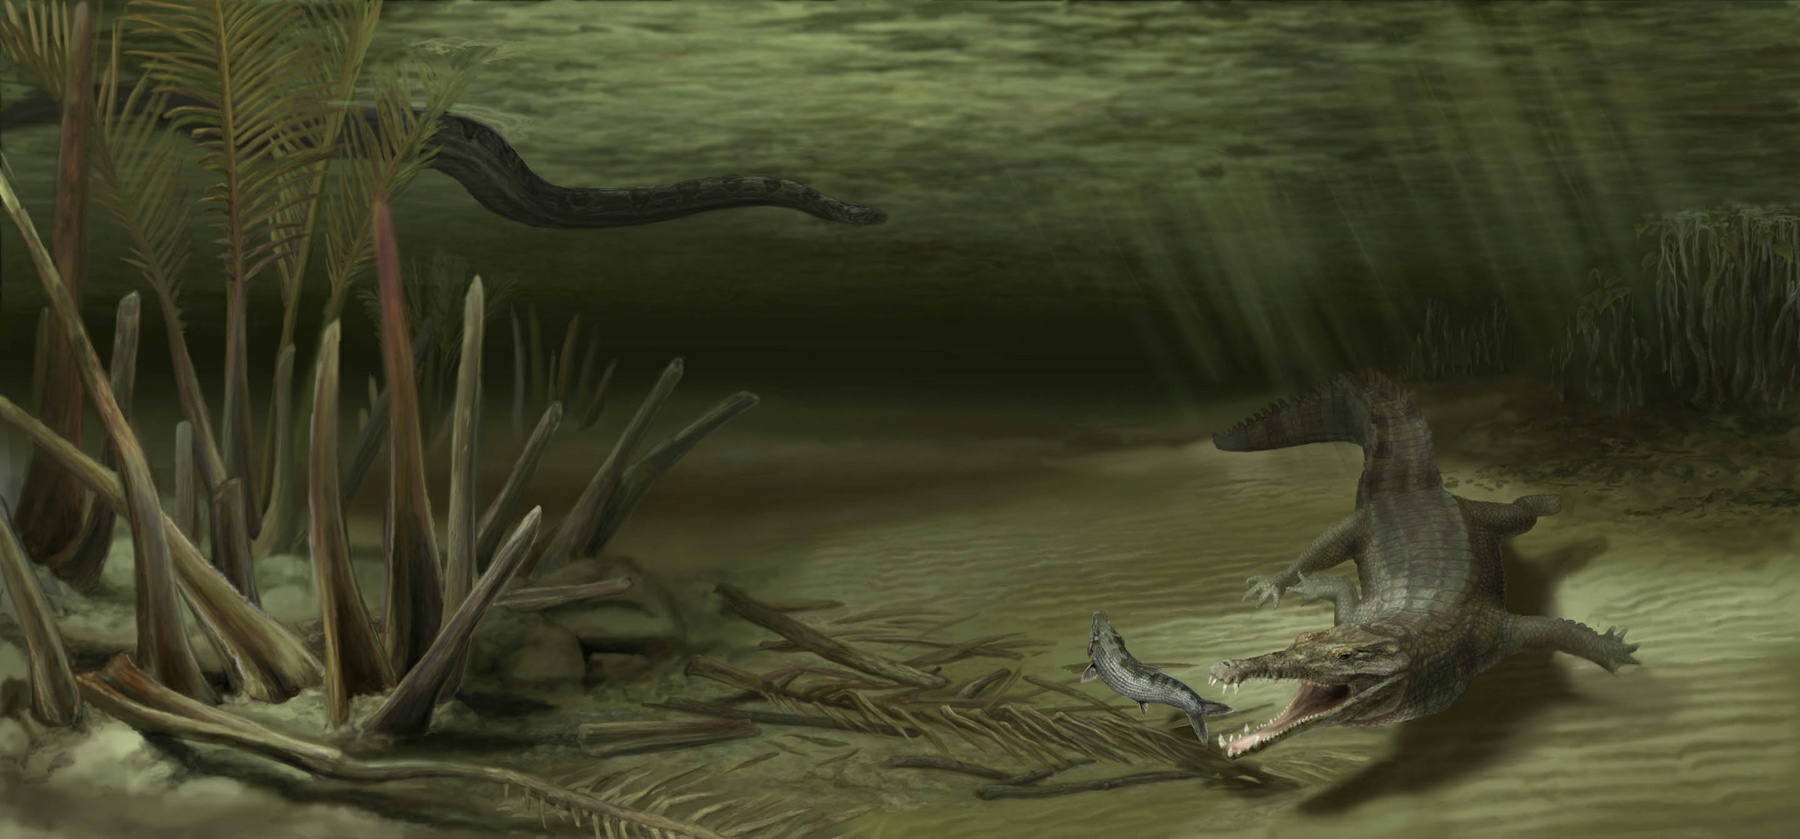 Acherontisuchus guajiraensis versus Titanoboa